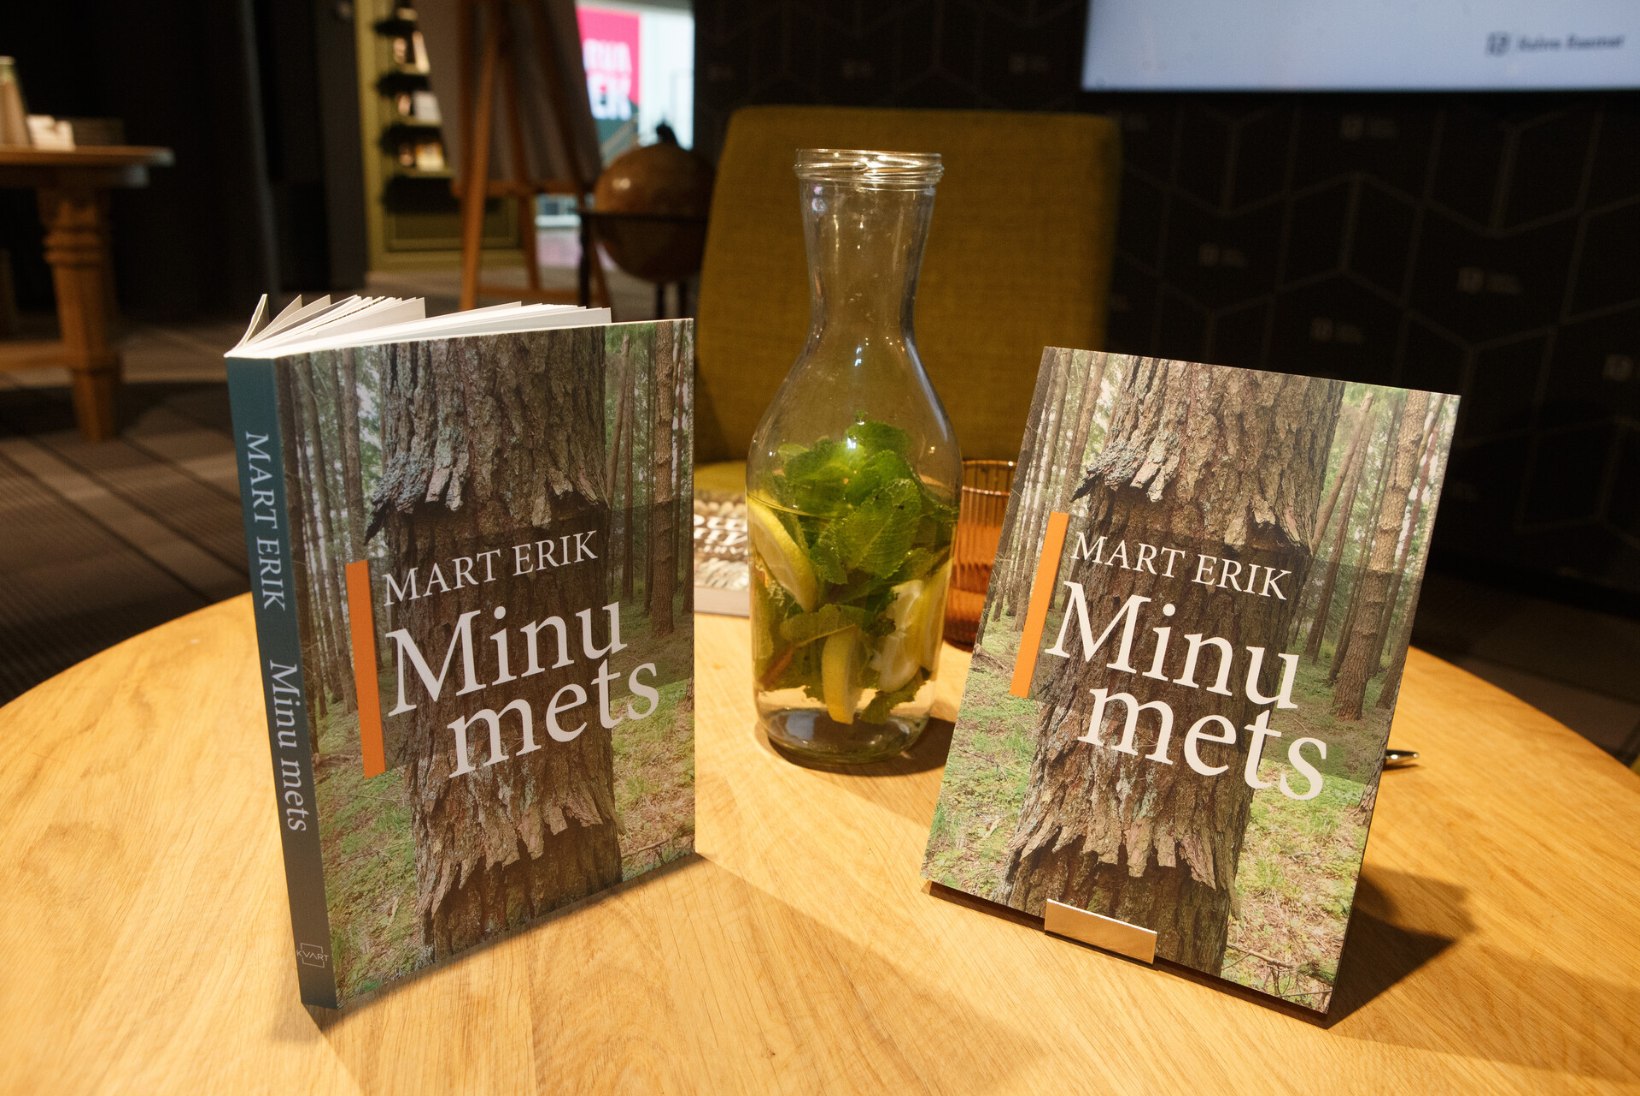 GALERII | Metsamees Mart Erik pani raamatusse kirja metsa tõe ja metsa õiguse